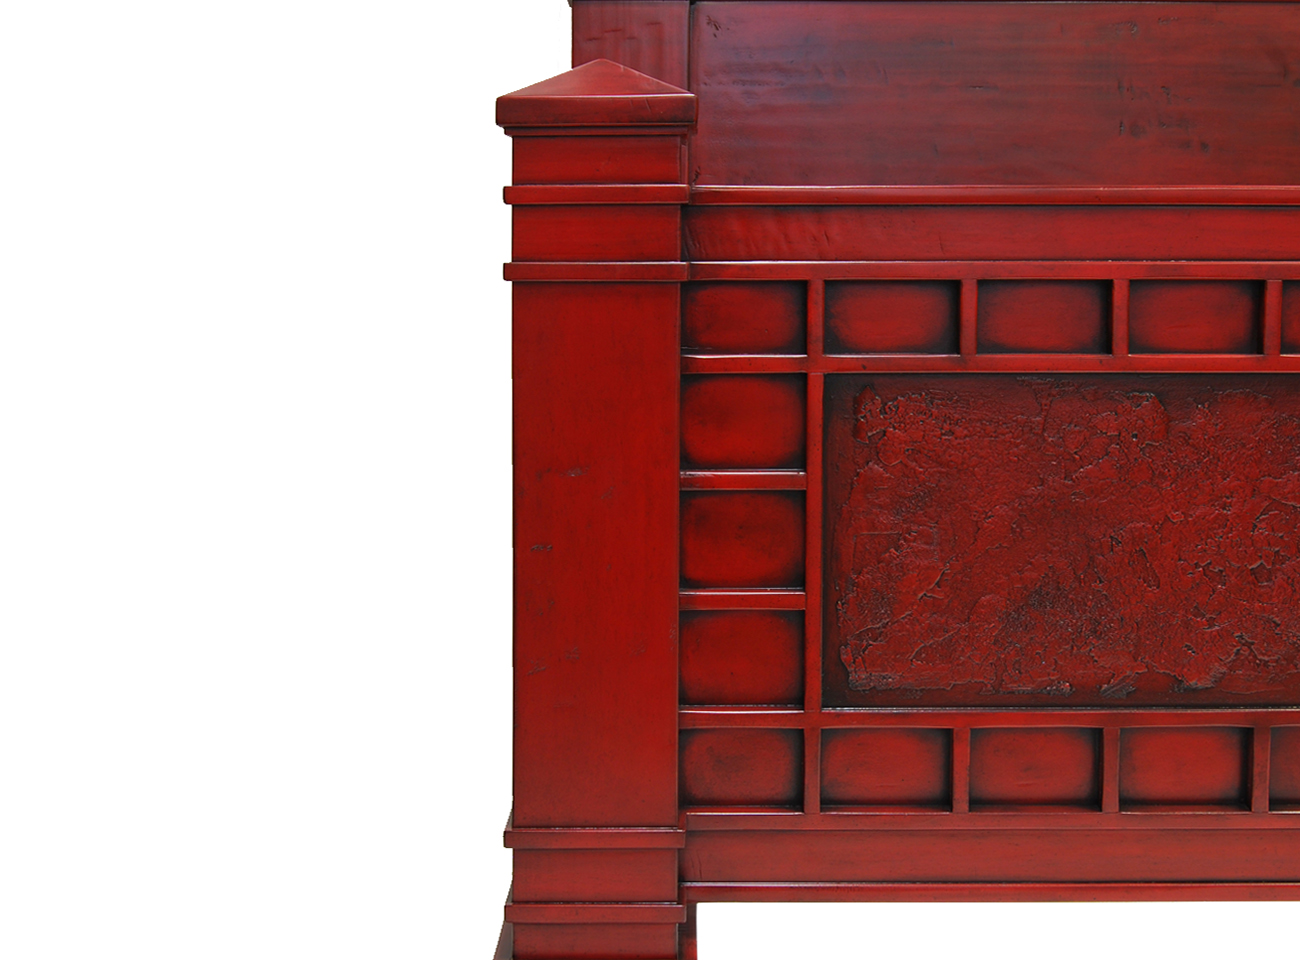 Robert Seliger Hunan Craftsman Bed detail web